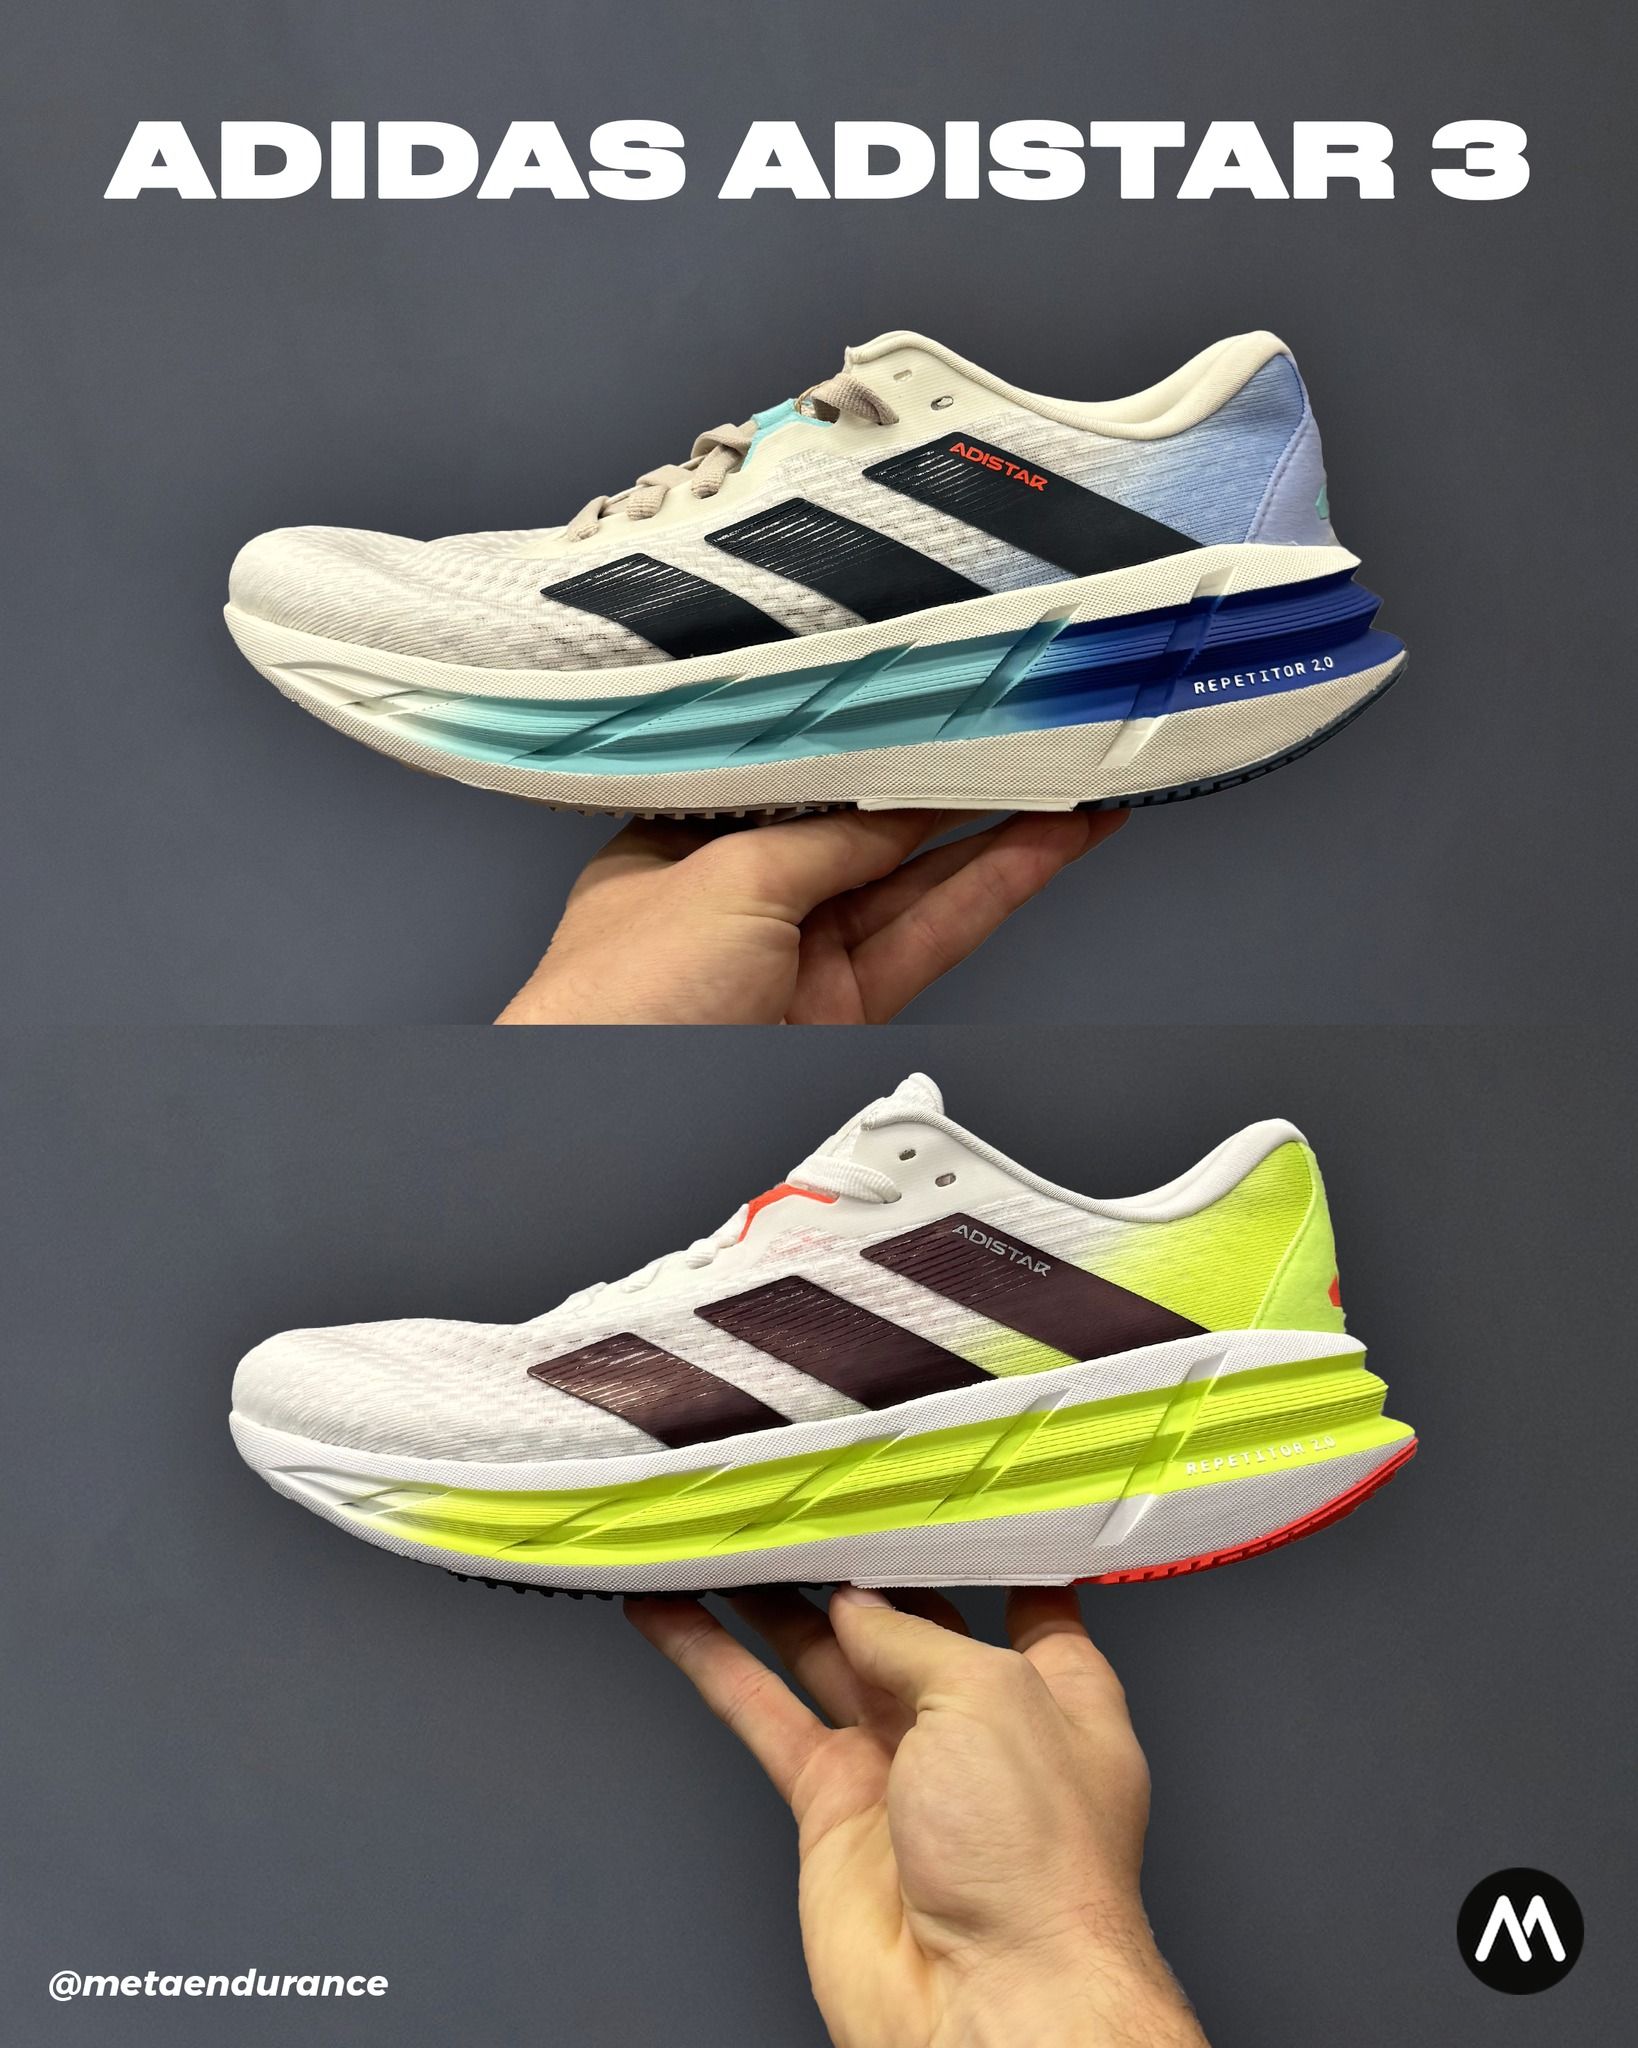 Adidas Adistar 3